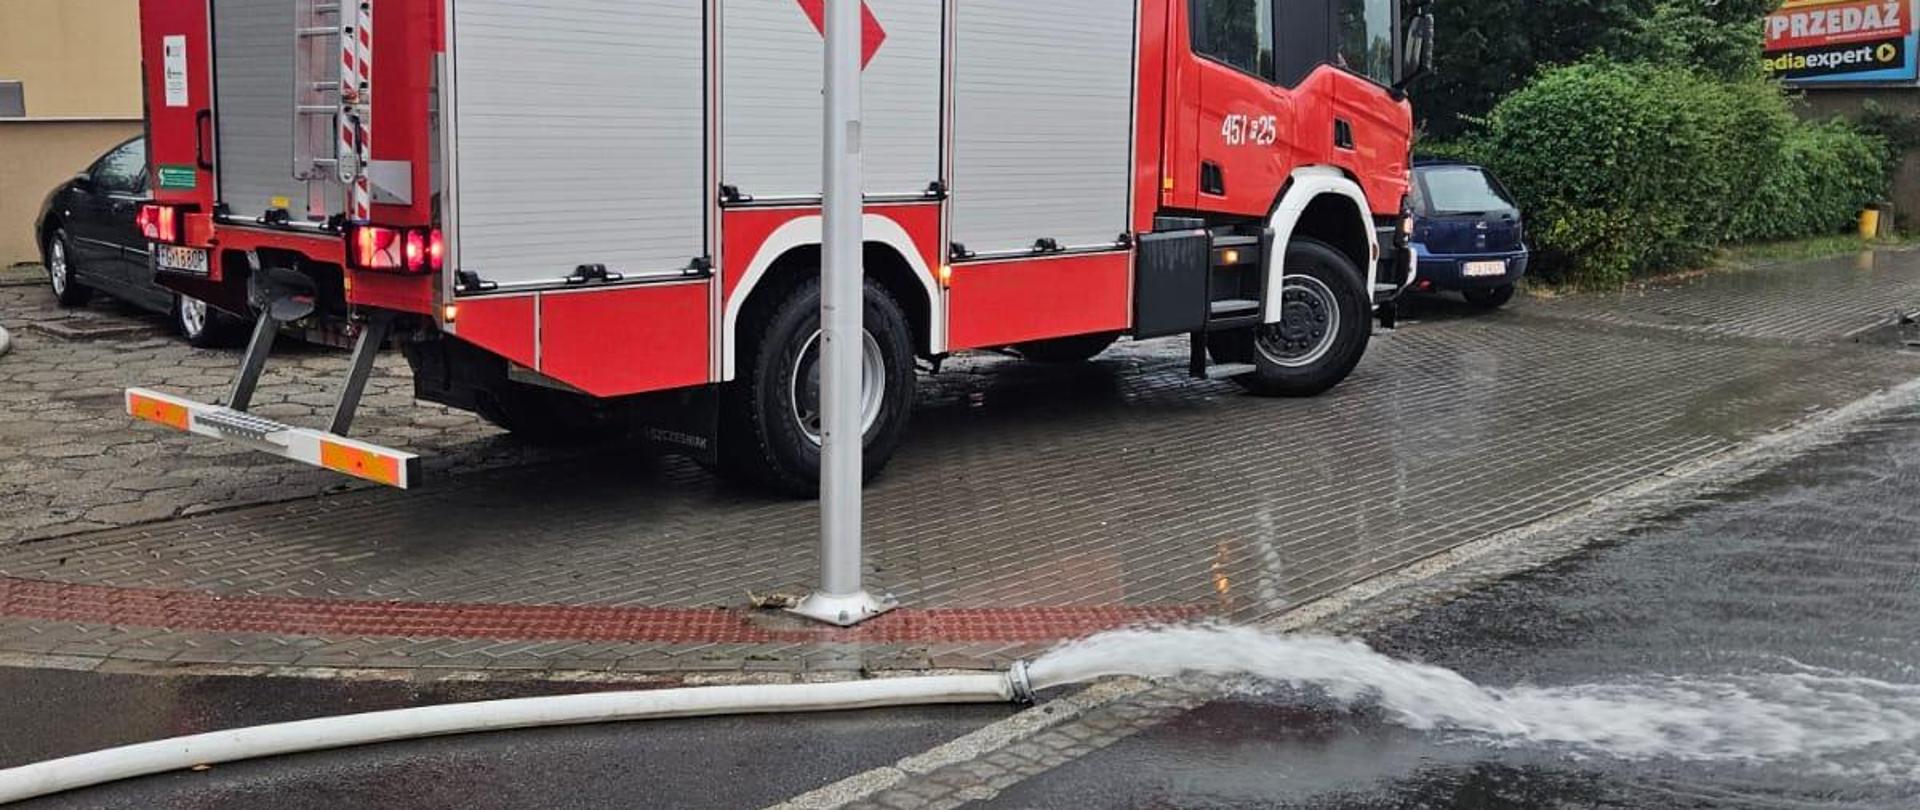 Samochód pożarniczy i pompownie wody